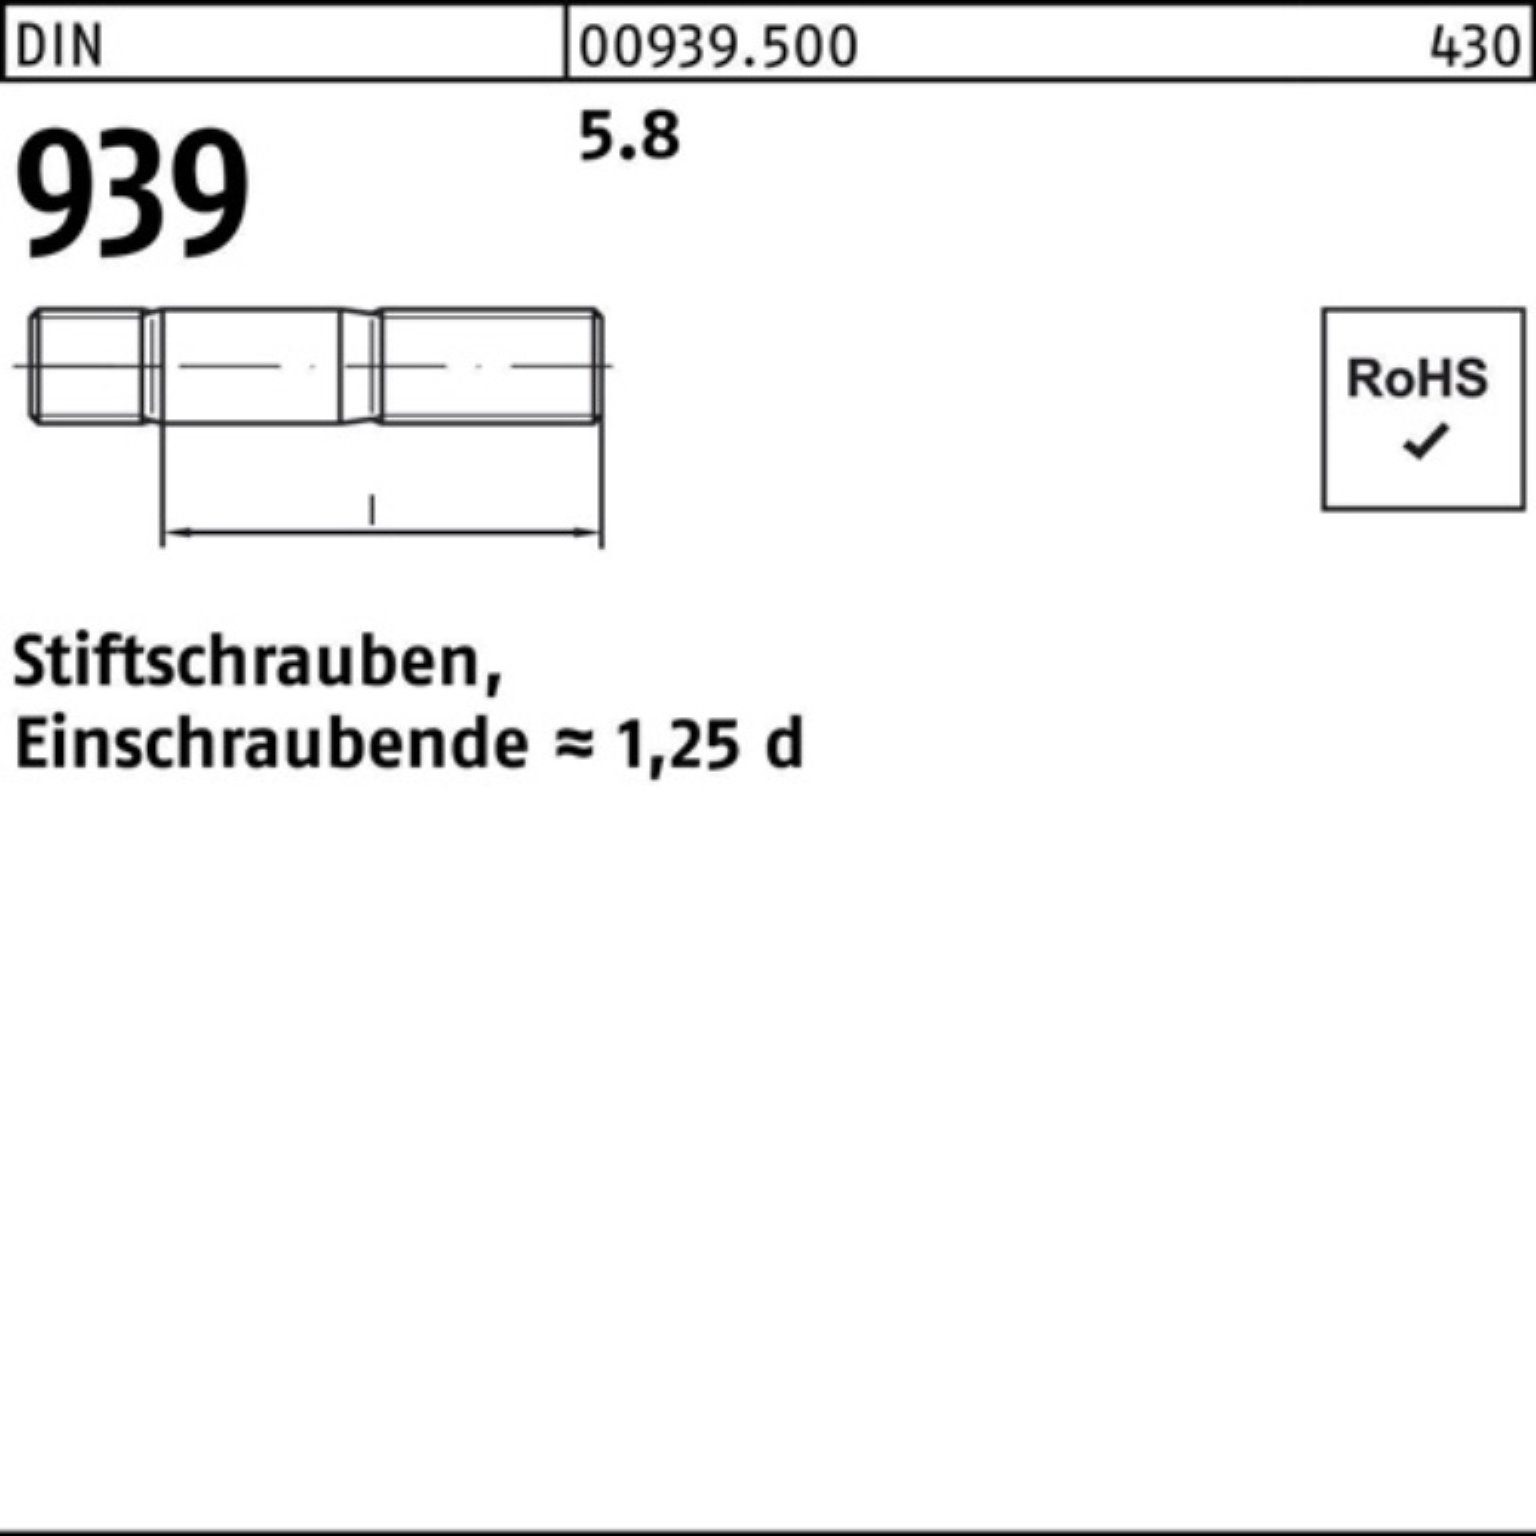 Pack 10 5.8 100er S Stiftschraube M30x 939 Reyher 65 Stiftschraube DIN Einschraubende=1,25d